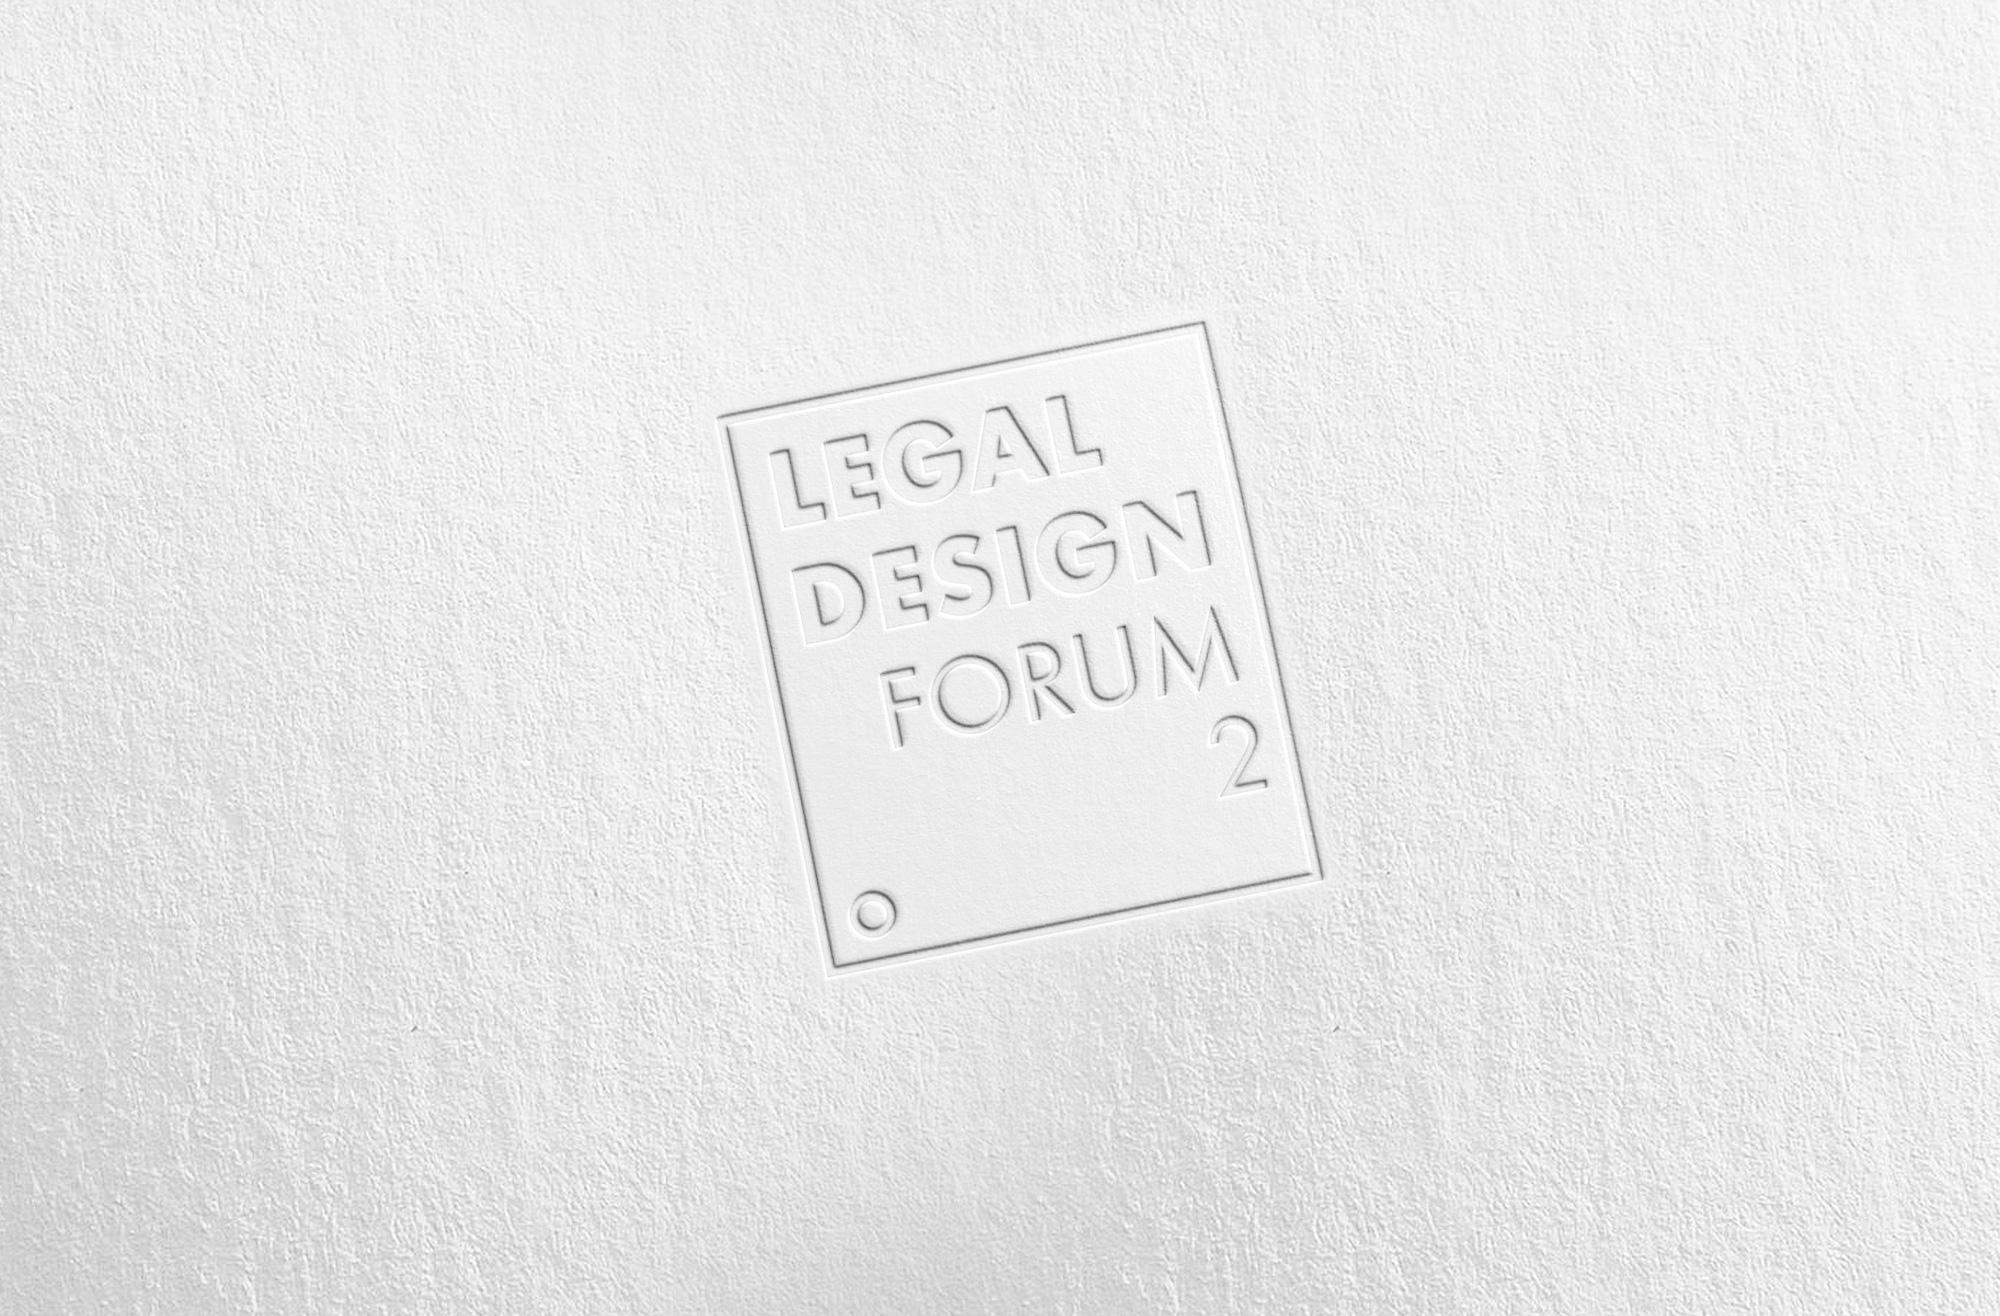 Prawo dobrze zaprojektowane. Po konferencji II Forum Legal Design